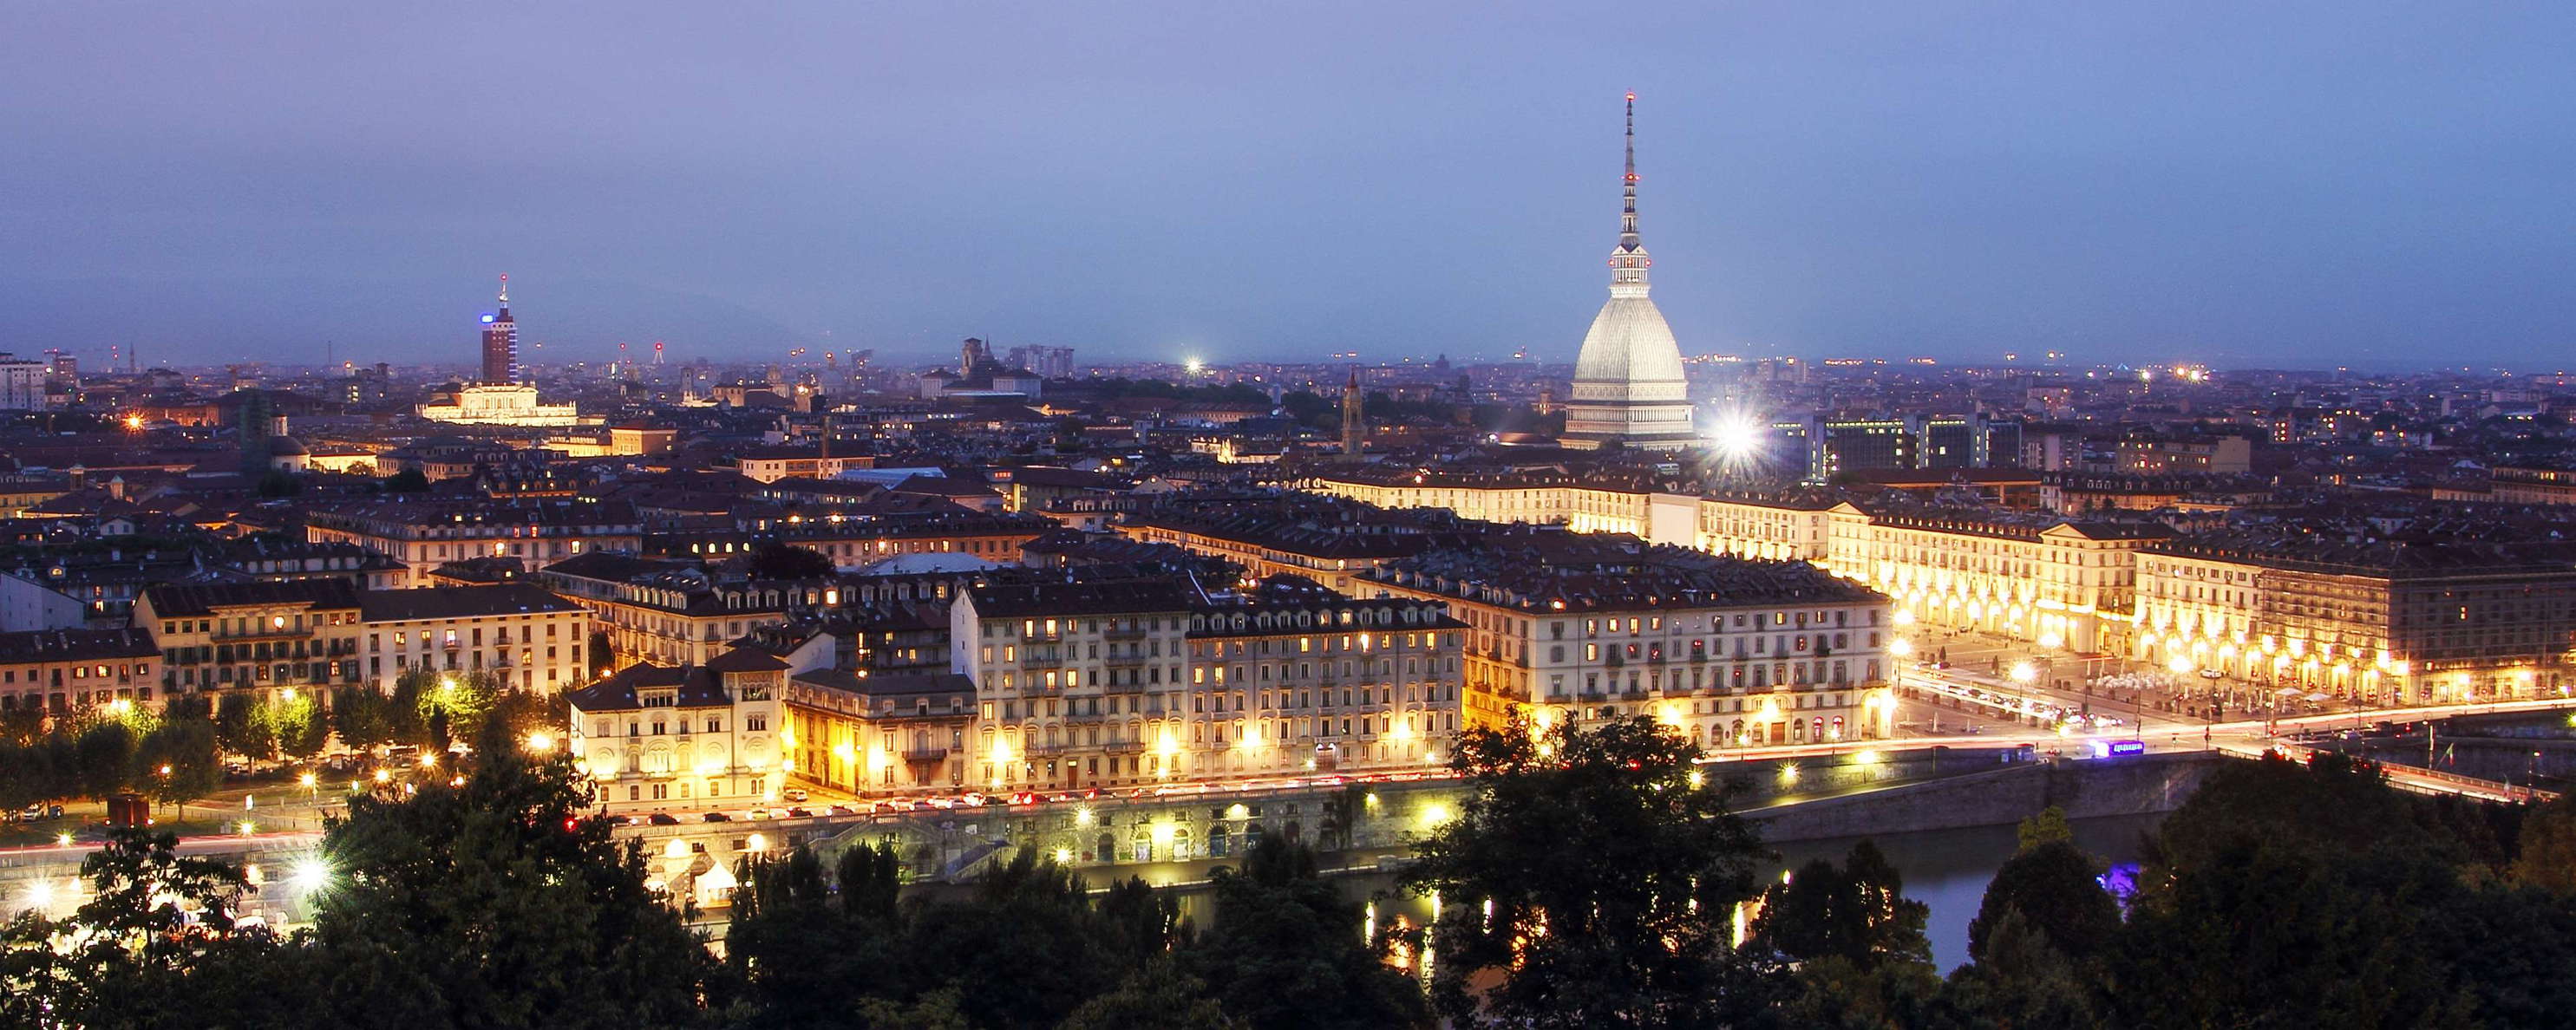 Torino | Panoramic view